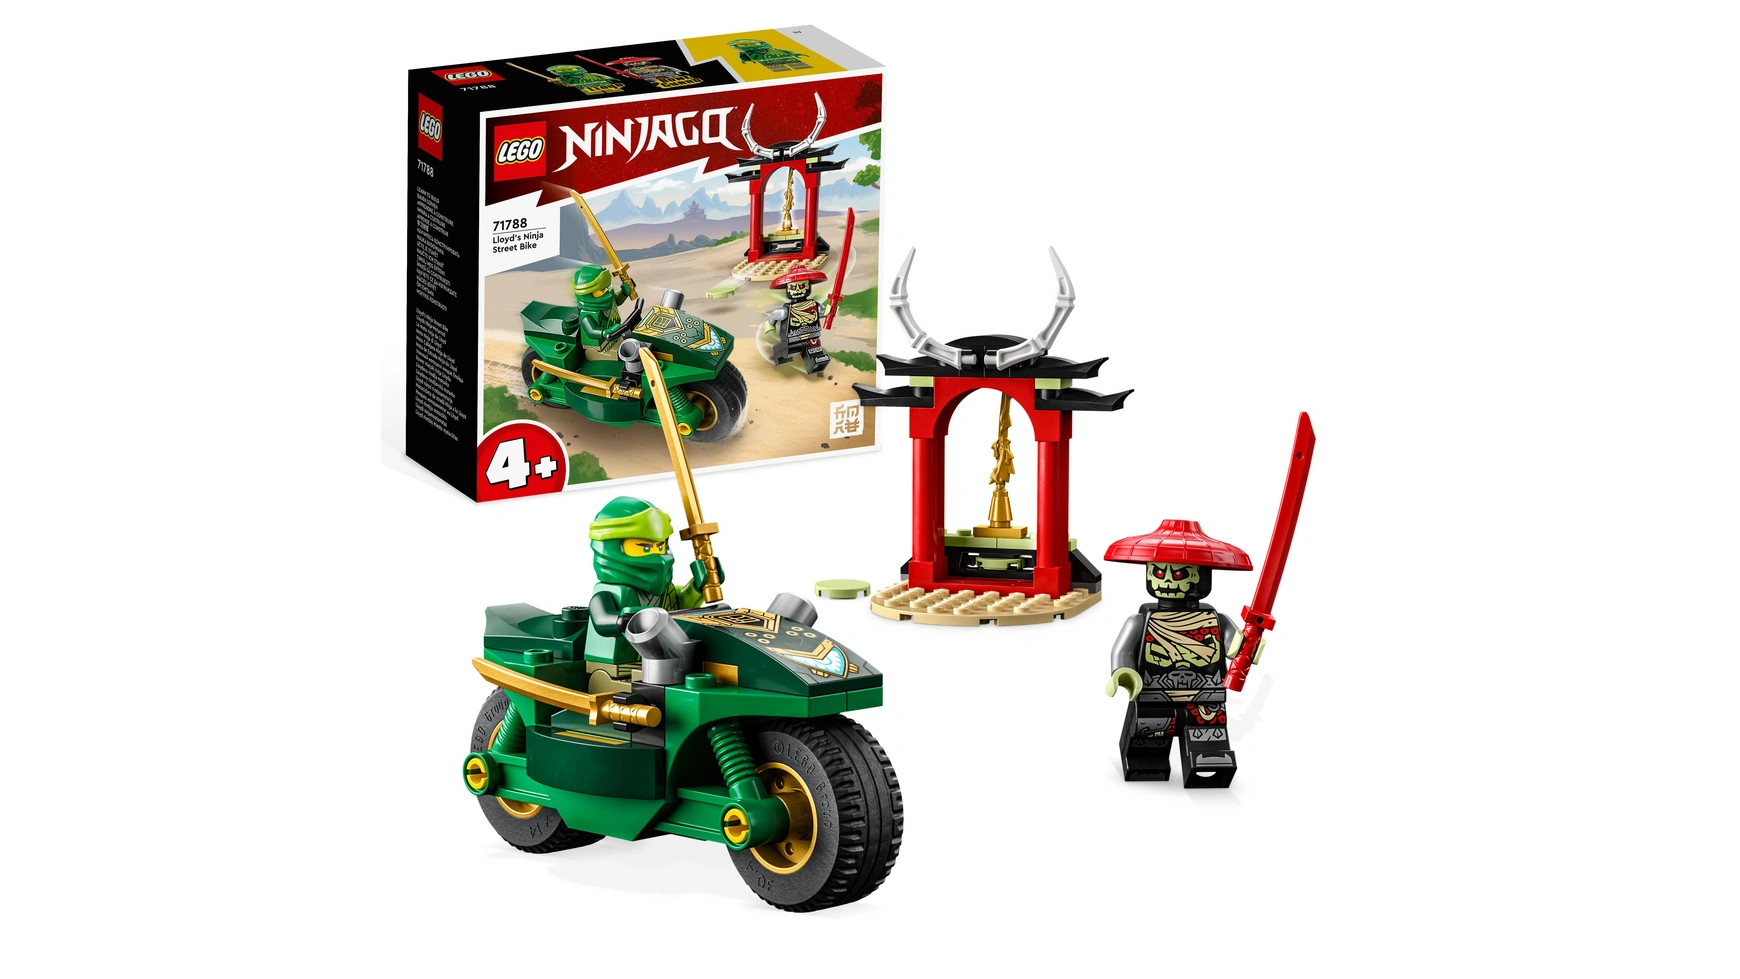 Lego NINJAGO Игрушка-мотоцикл Lloyd's Ninja для детей от 4 лет и старше конструктор lego ninjago мотоцикл ллойда ниндзя